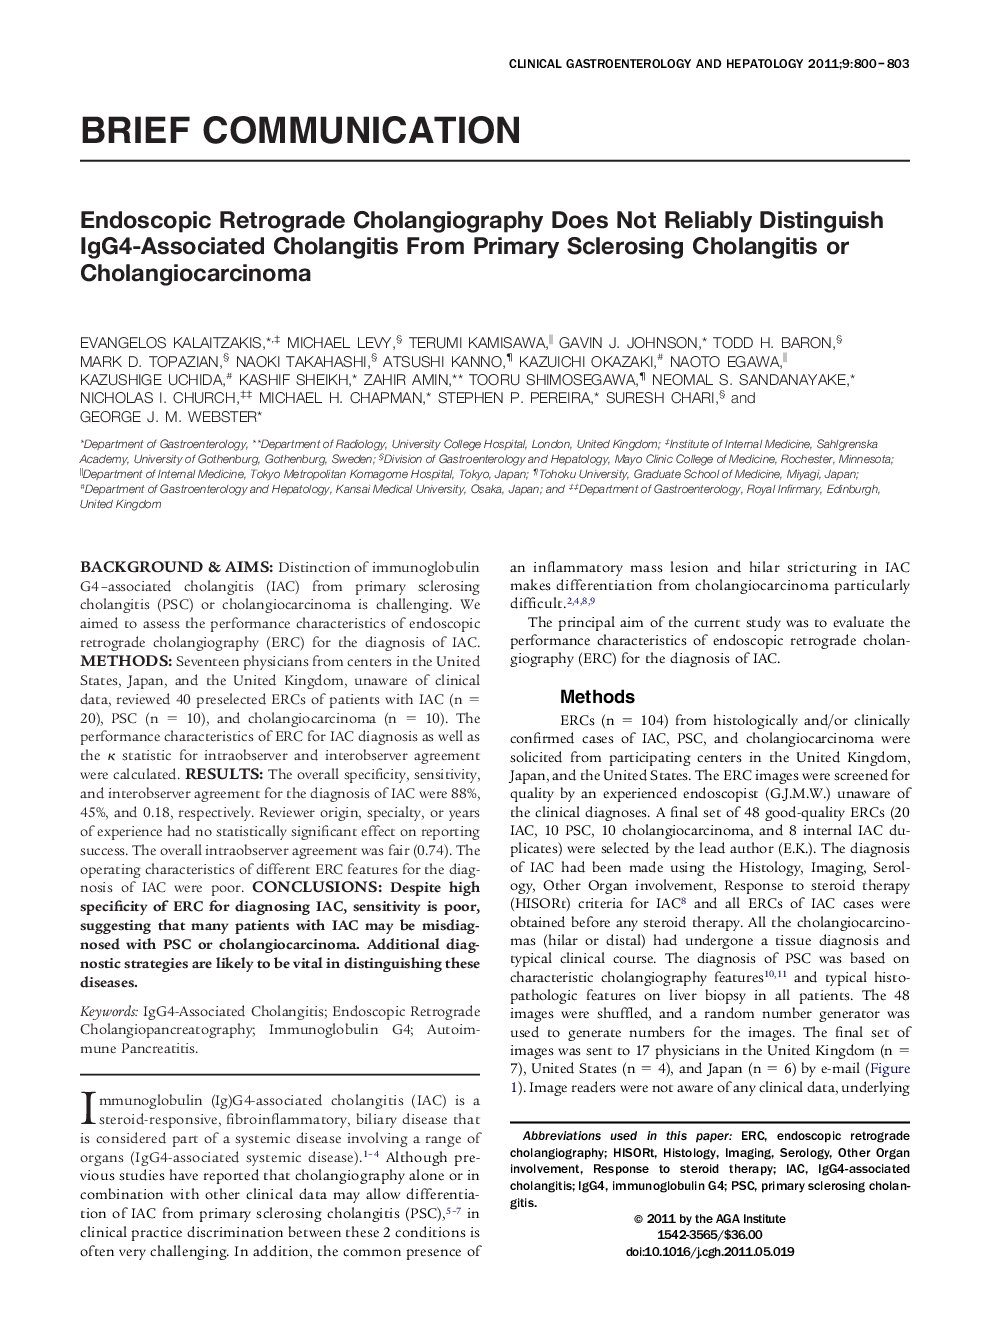 Endoscopic Retrograde Cholangiography Does Not Reliably Distinguish IgG4-Associated Cholangitis From Primary Sclerosing Cholangitis or Cholangiocarcinoma